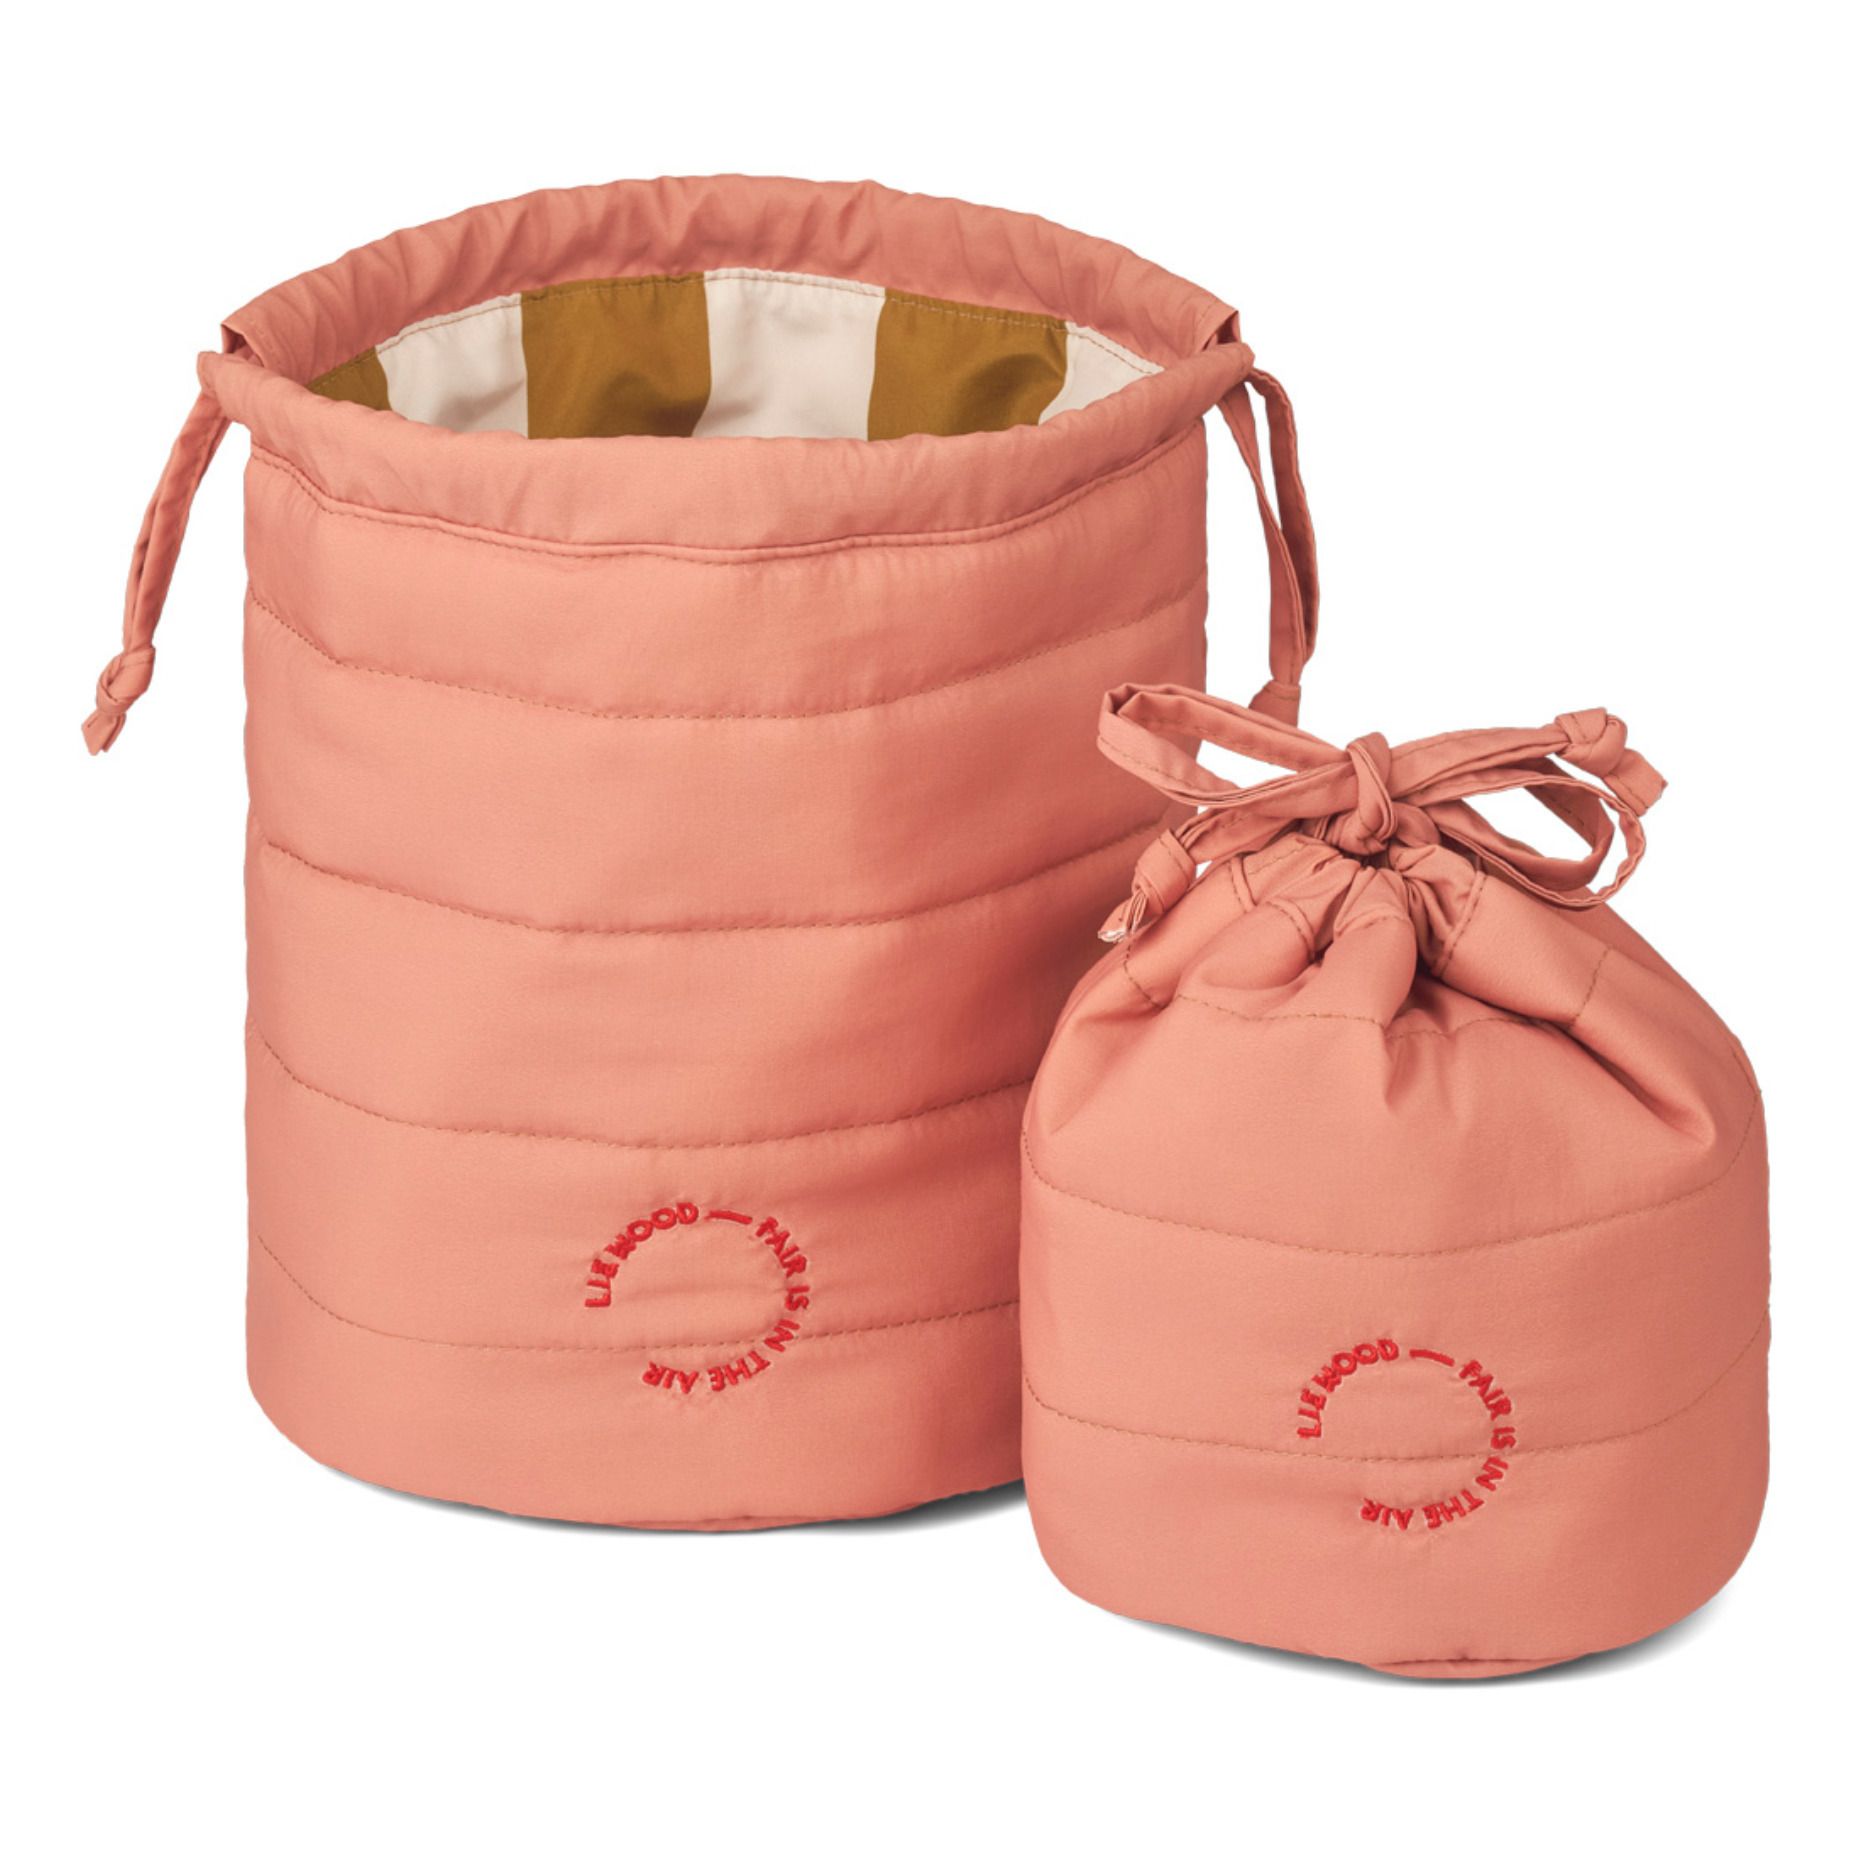 Luan Storage Pouches - Set of 2 Pink Liewood Design Children